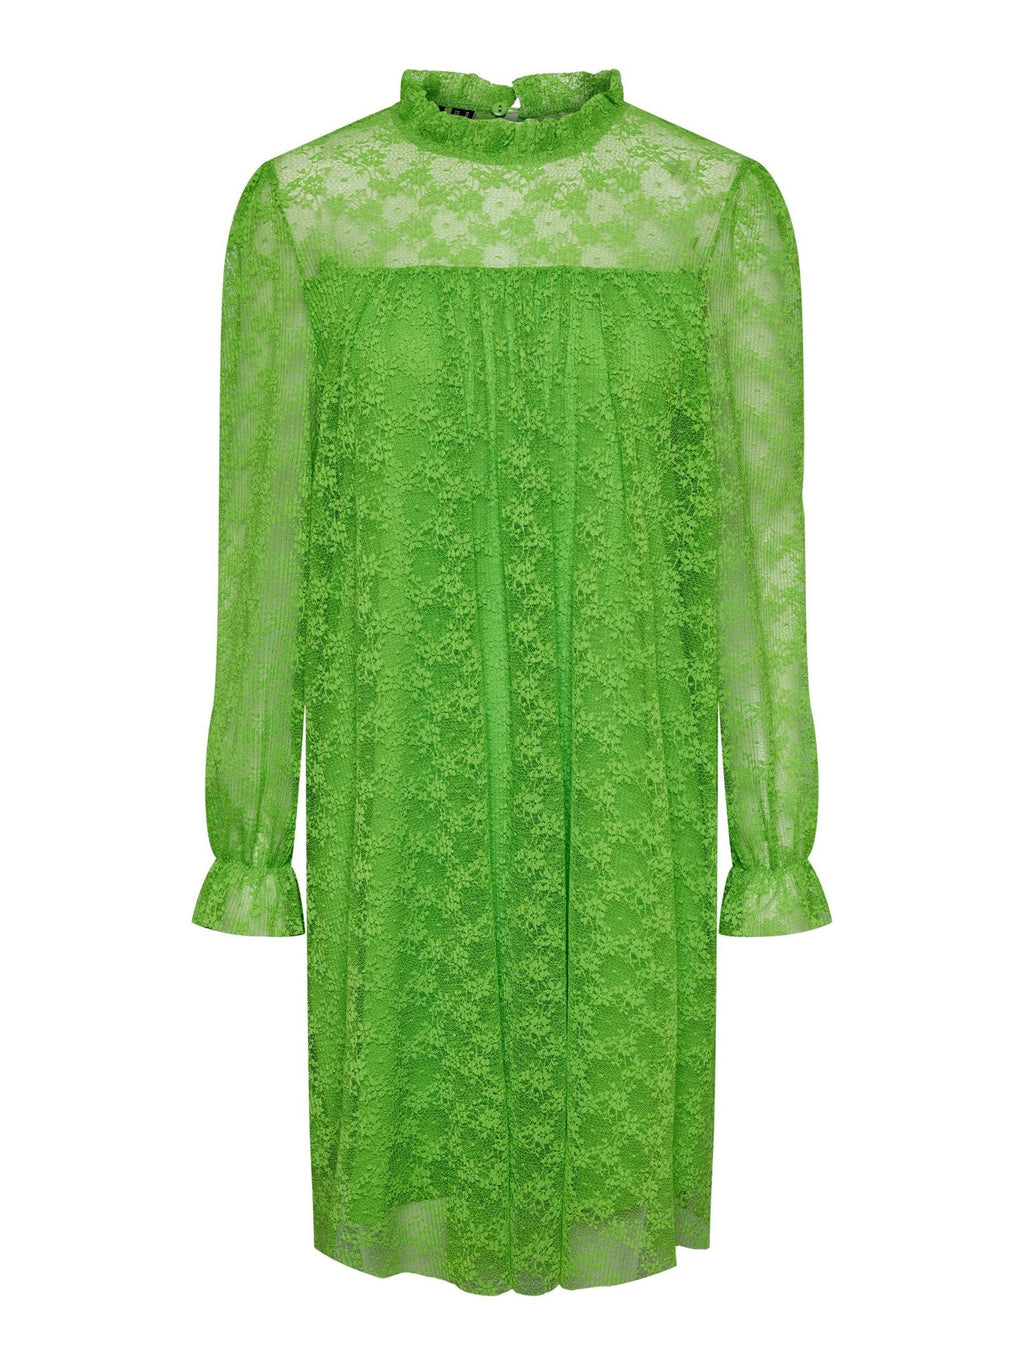 Que encaje maxi kjole - hierba verde